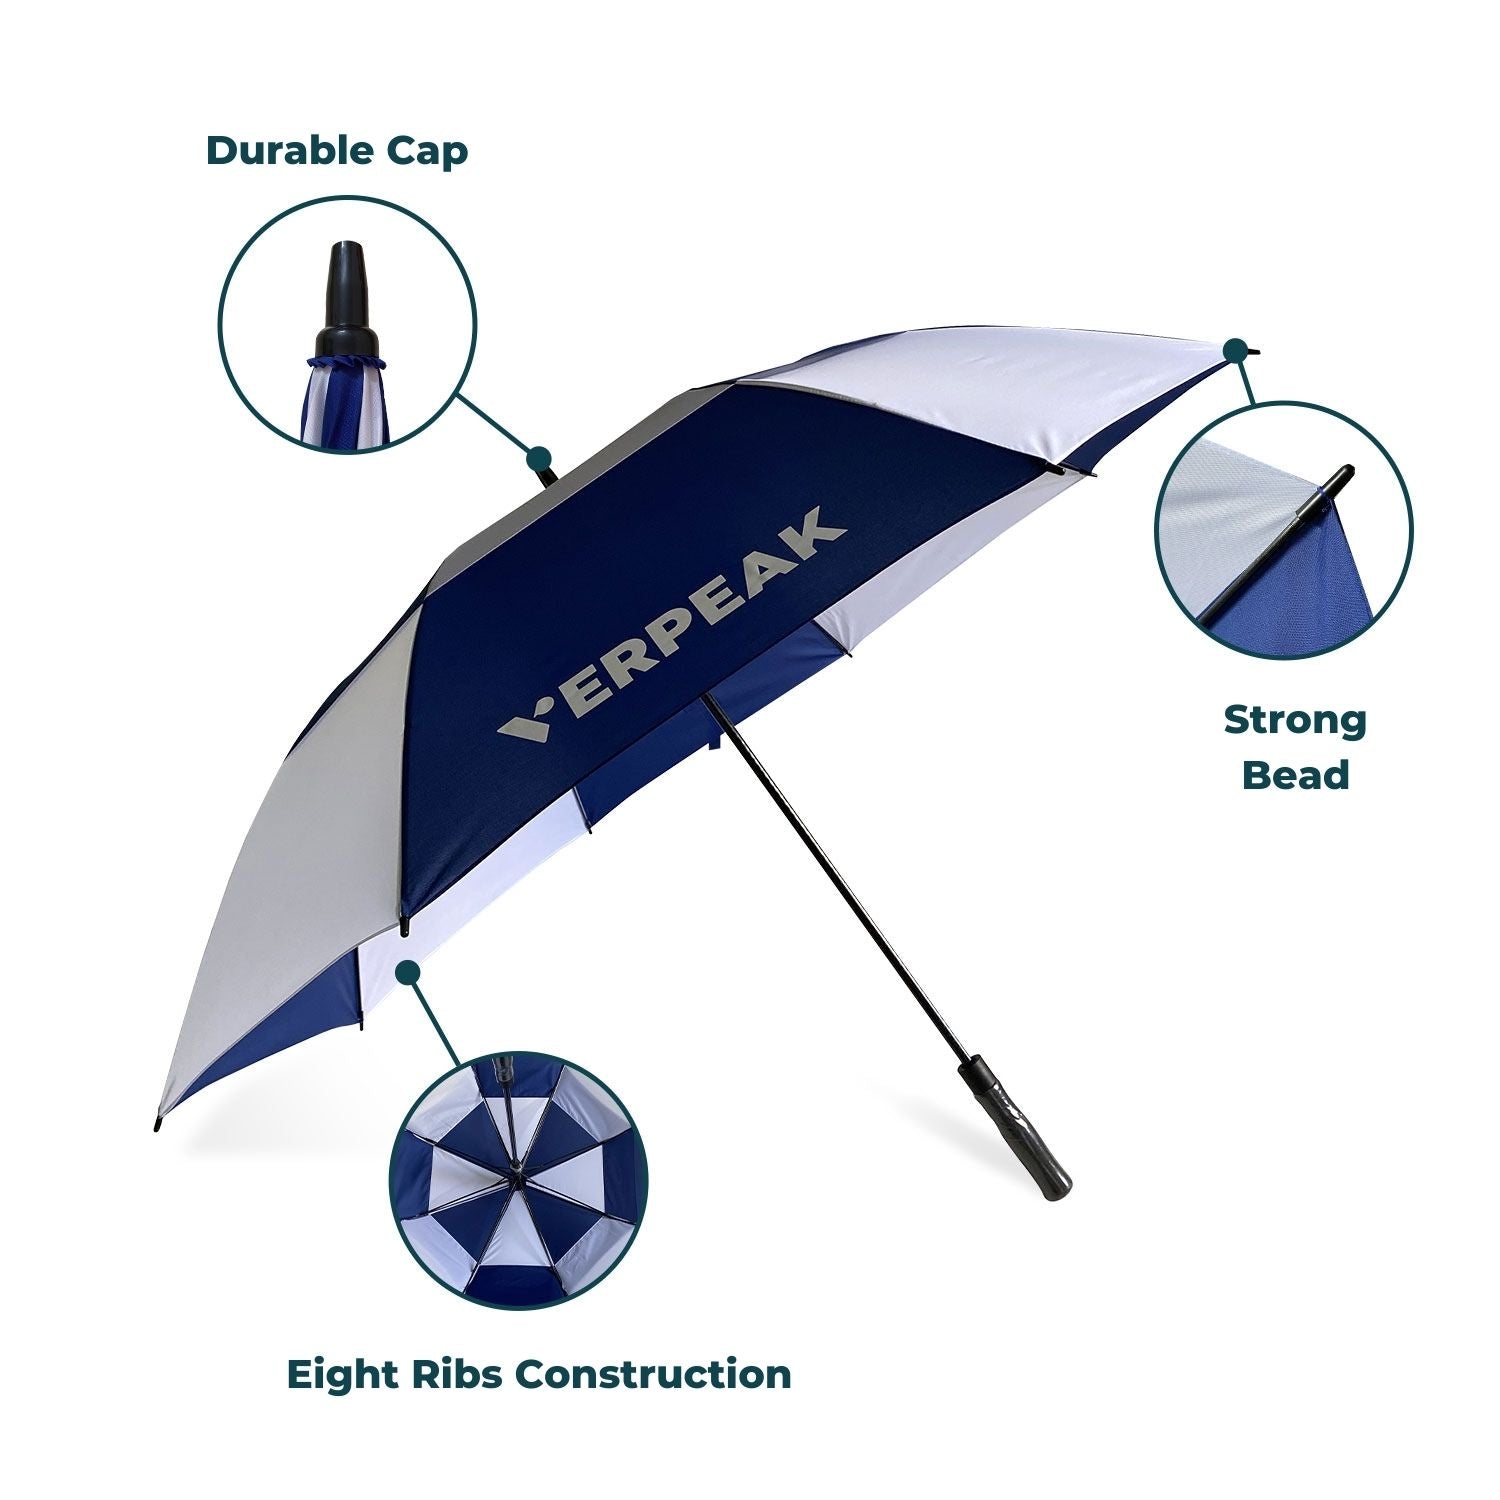 Verpeak Golf Umbrella Blue & White 62"